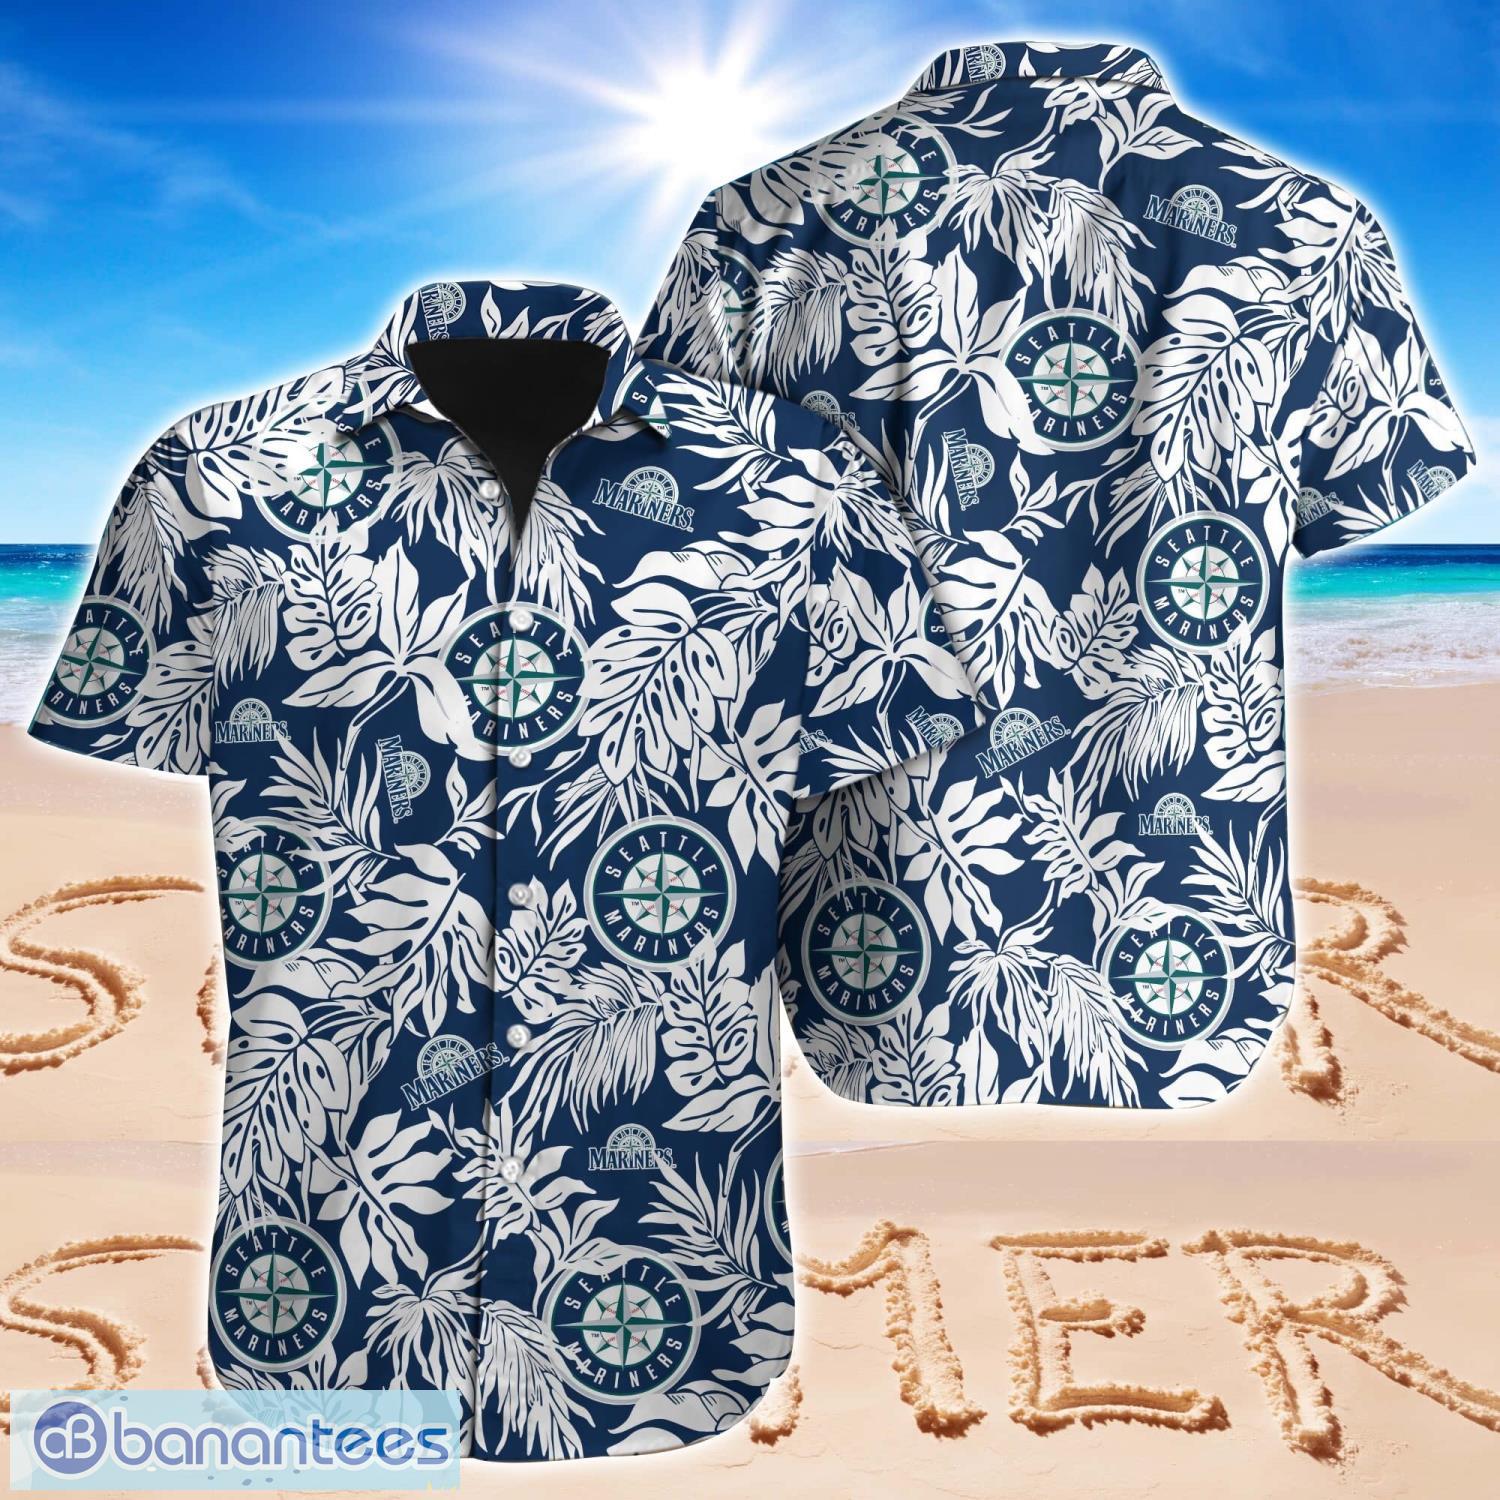 San Francisco Giants Hawaiian Shirt And Shorts Summer Beach Lover -  Banantees